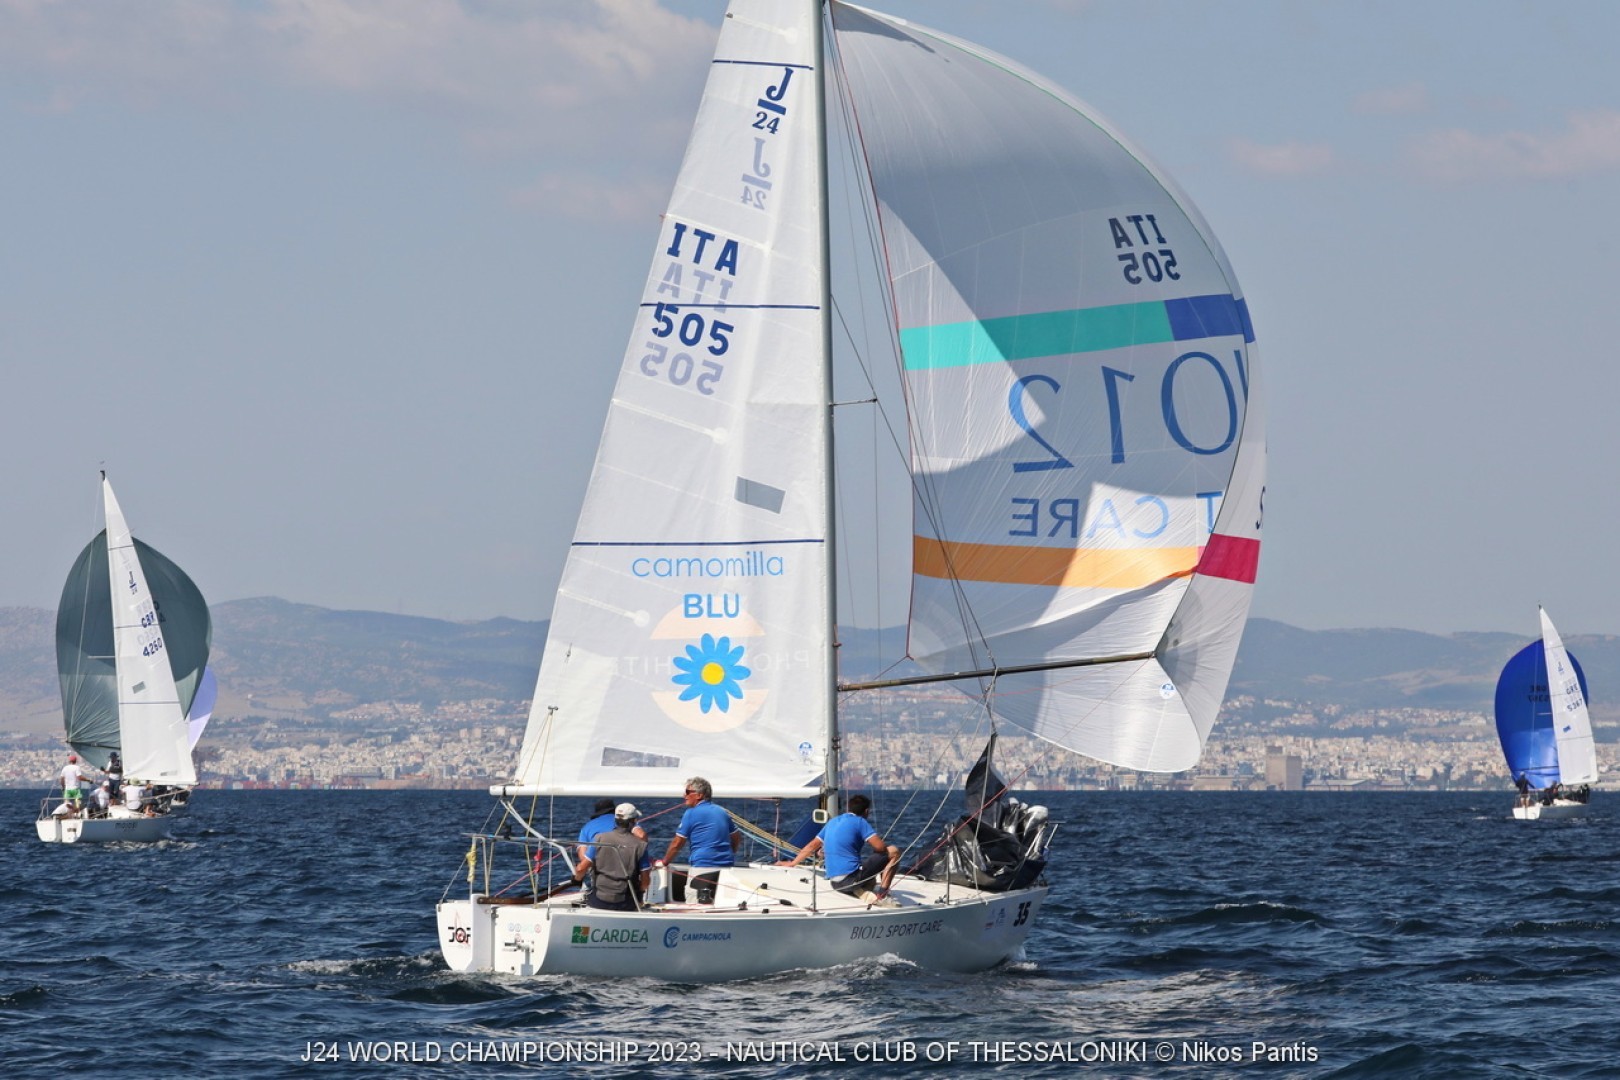 Day 2, prosegue in Grecia il J24 World Championship 2023